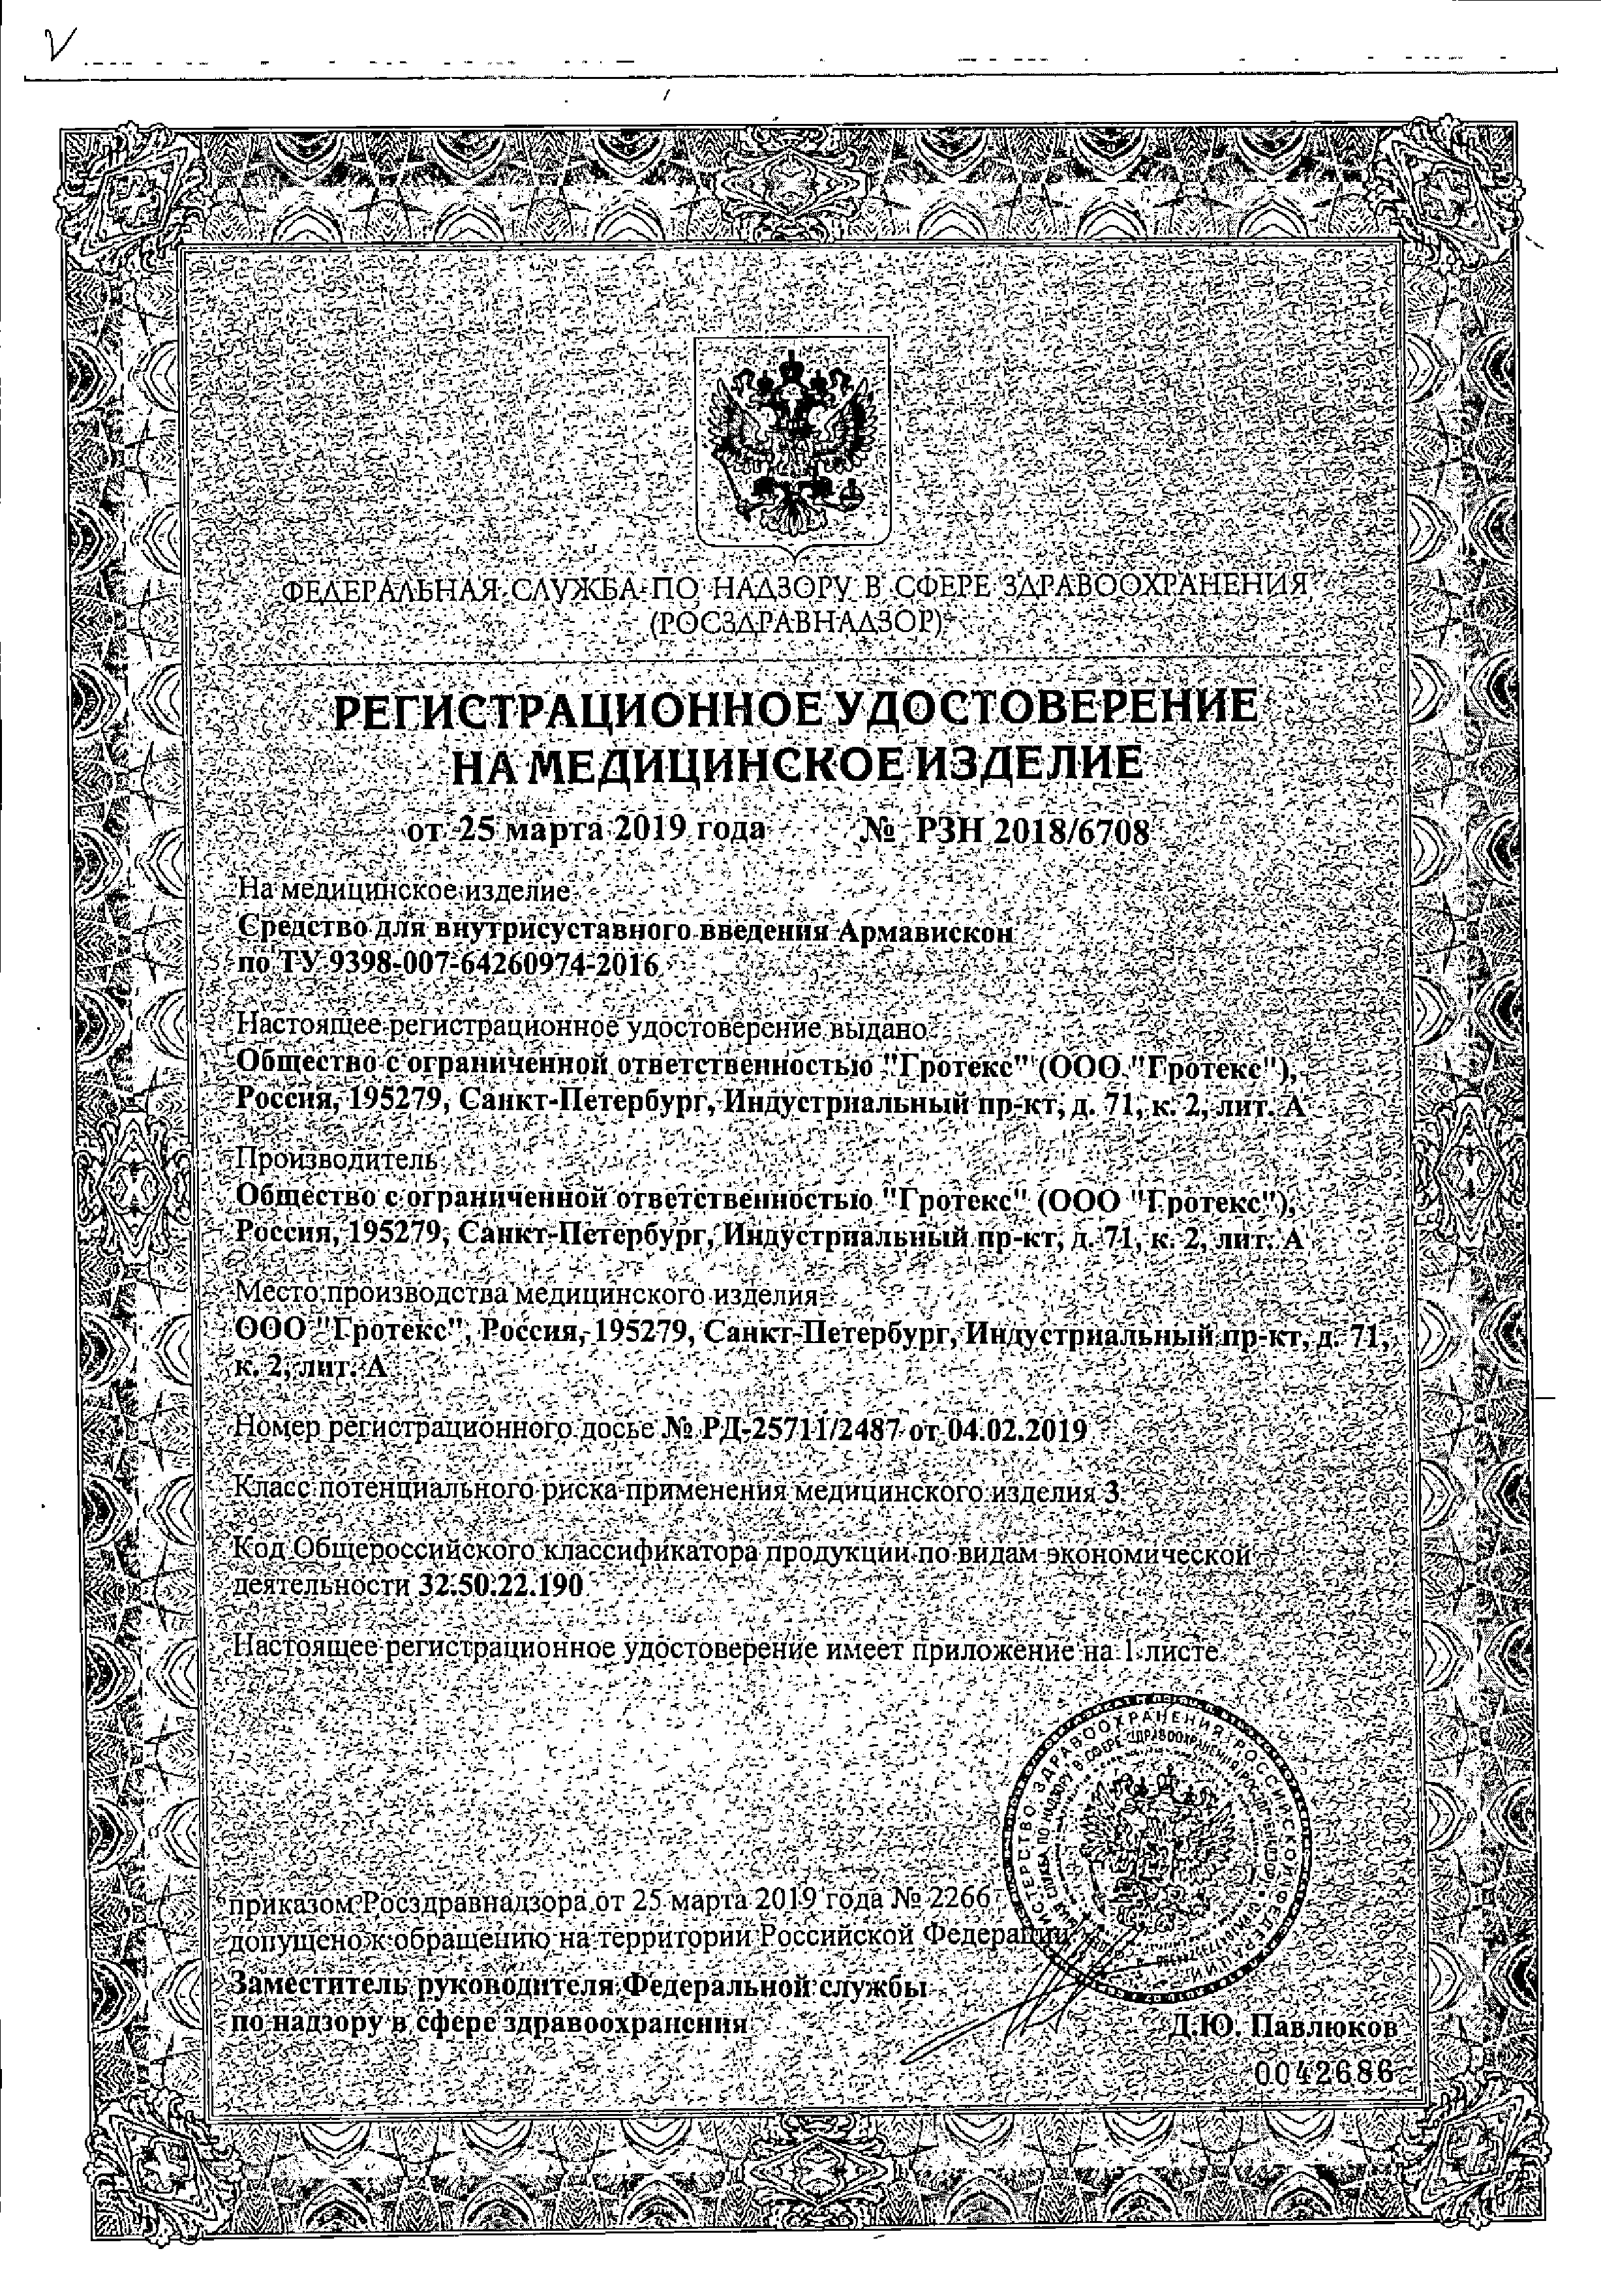 Армавискон Плюс сертификат